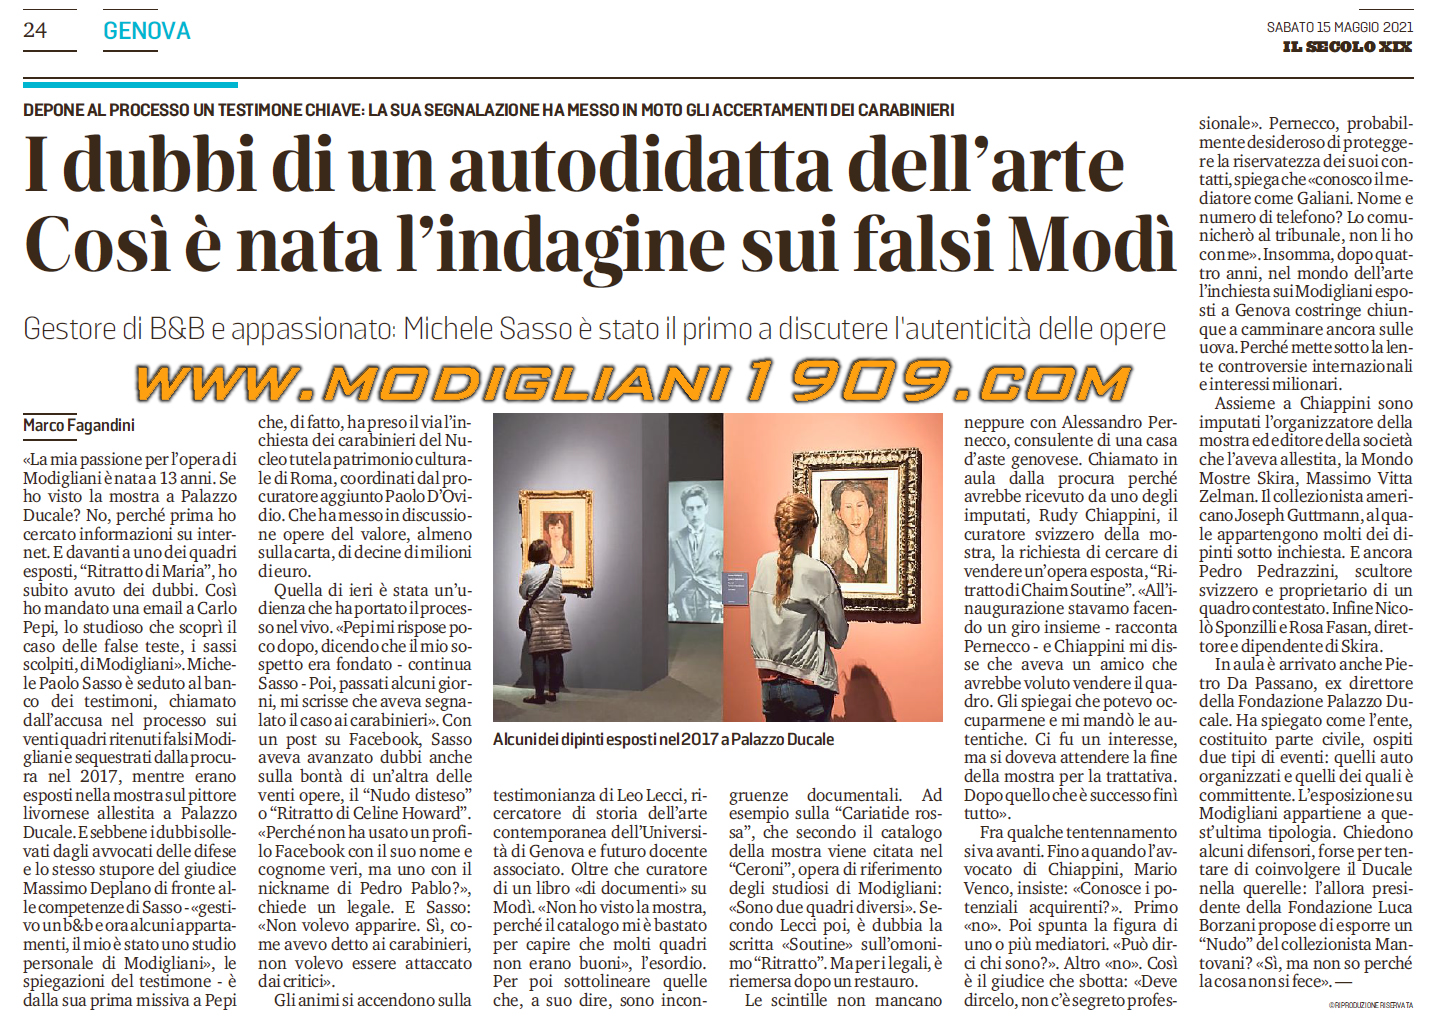 Ascoltati i primi testimoni al processo dui falsi Modigliani esposti a Palazzo Ducale di Genova